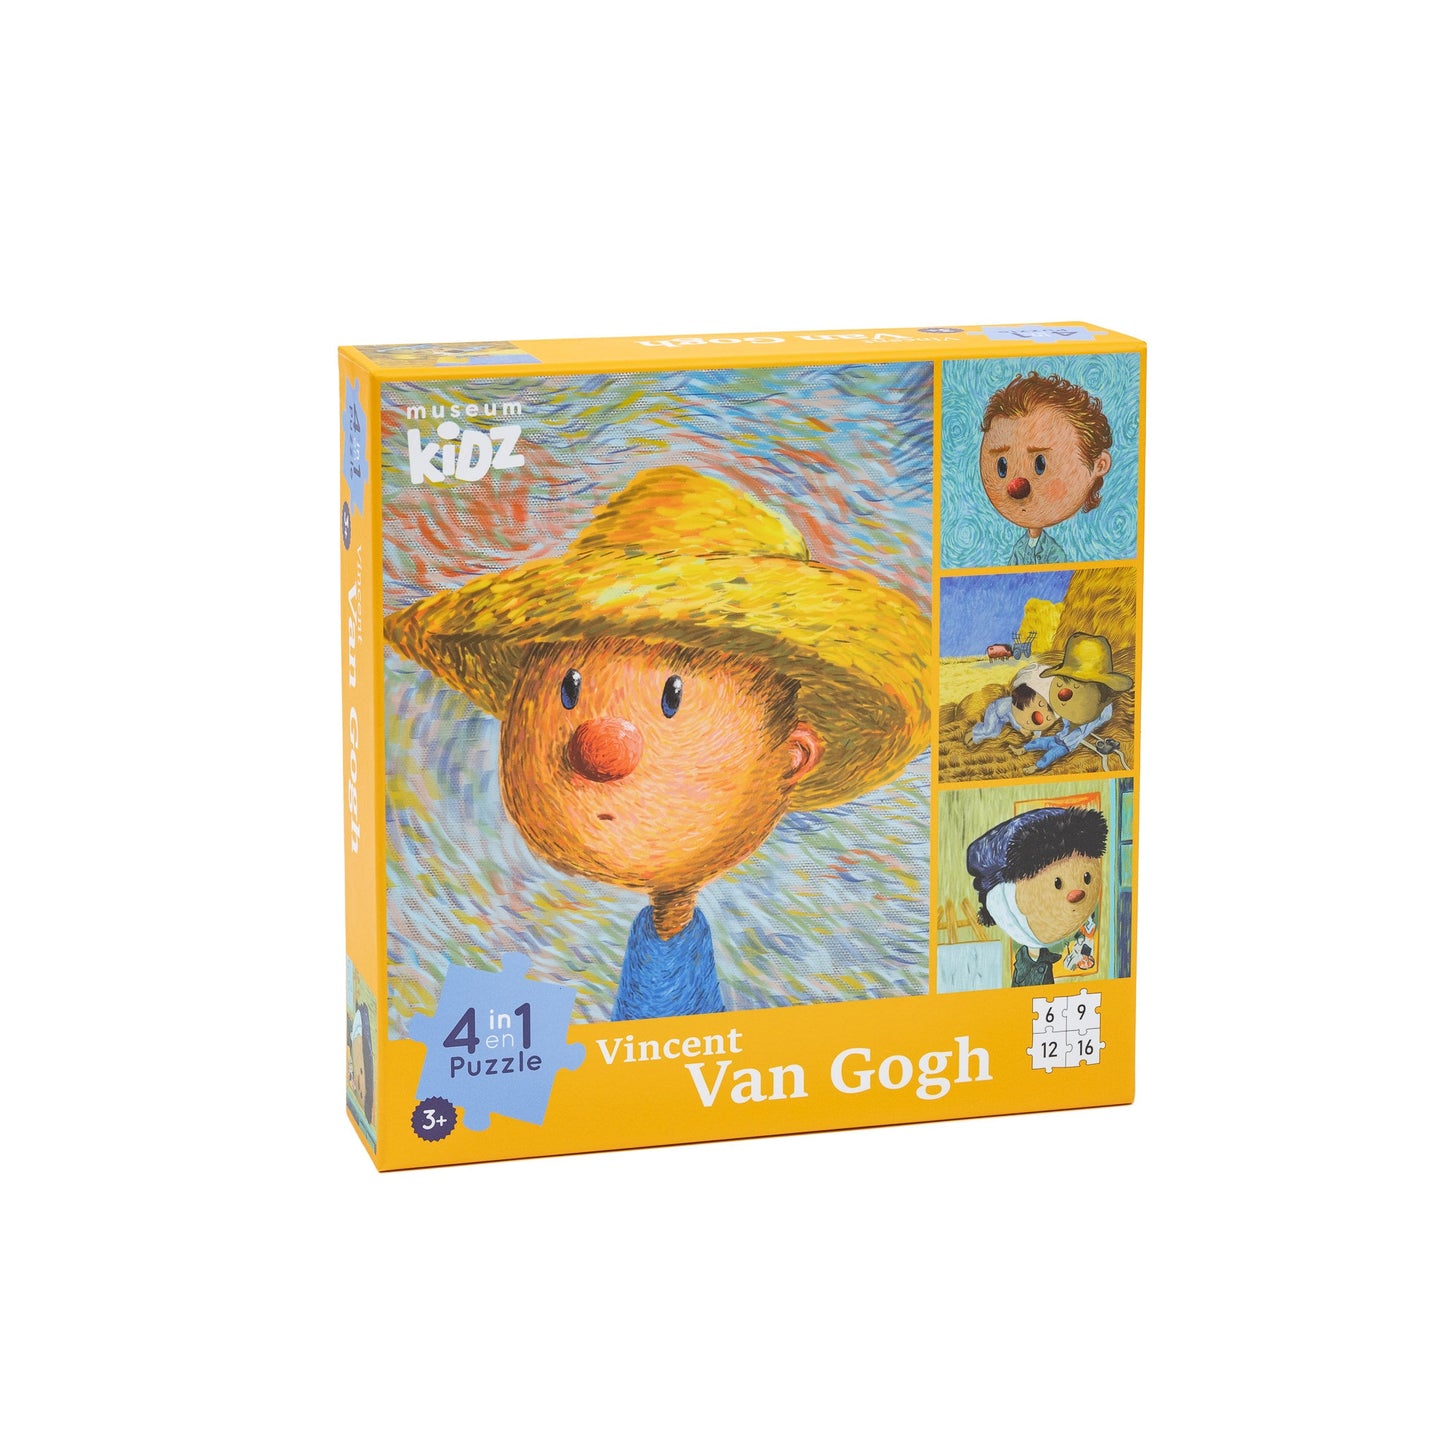 Museum Kidz 4-in-1 Puzzle: Vincent van Gogh